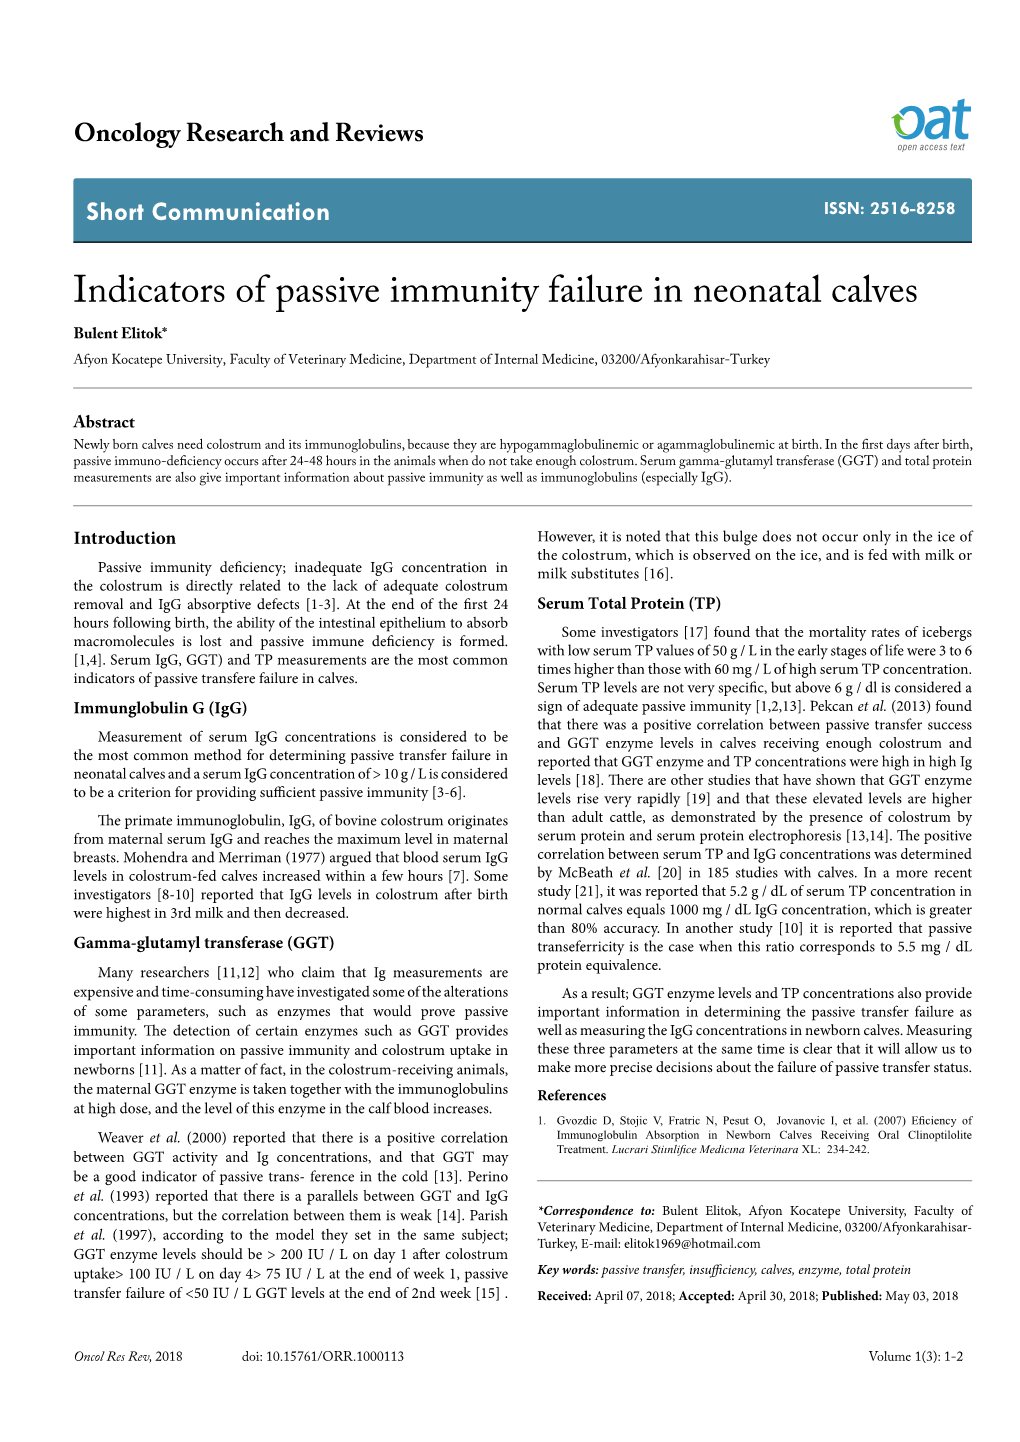 Indicators of Passive Immunity Failure in Neonatal Calves